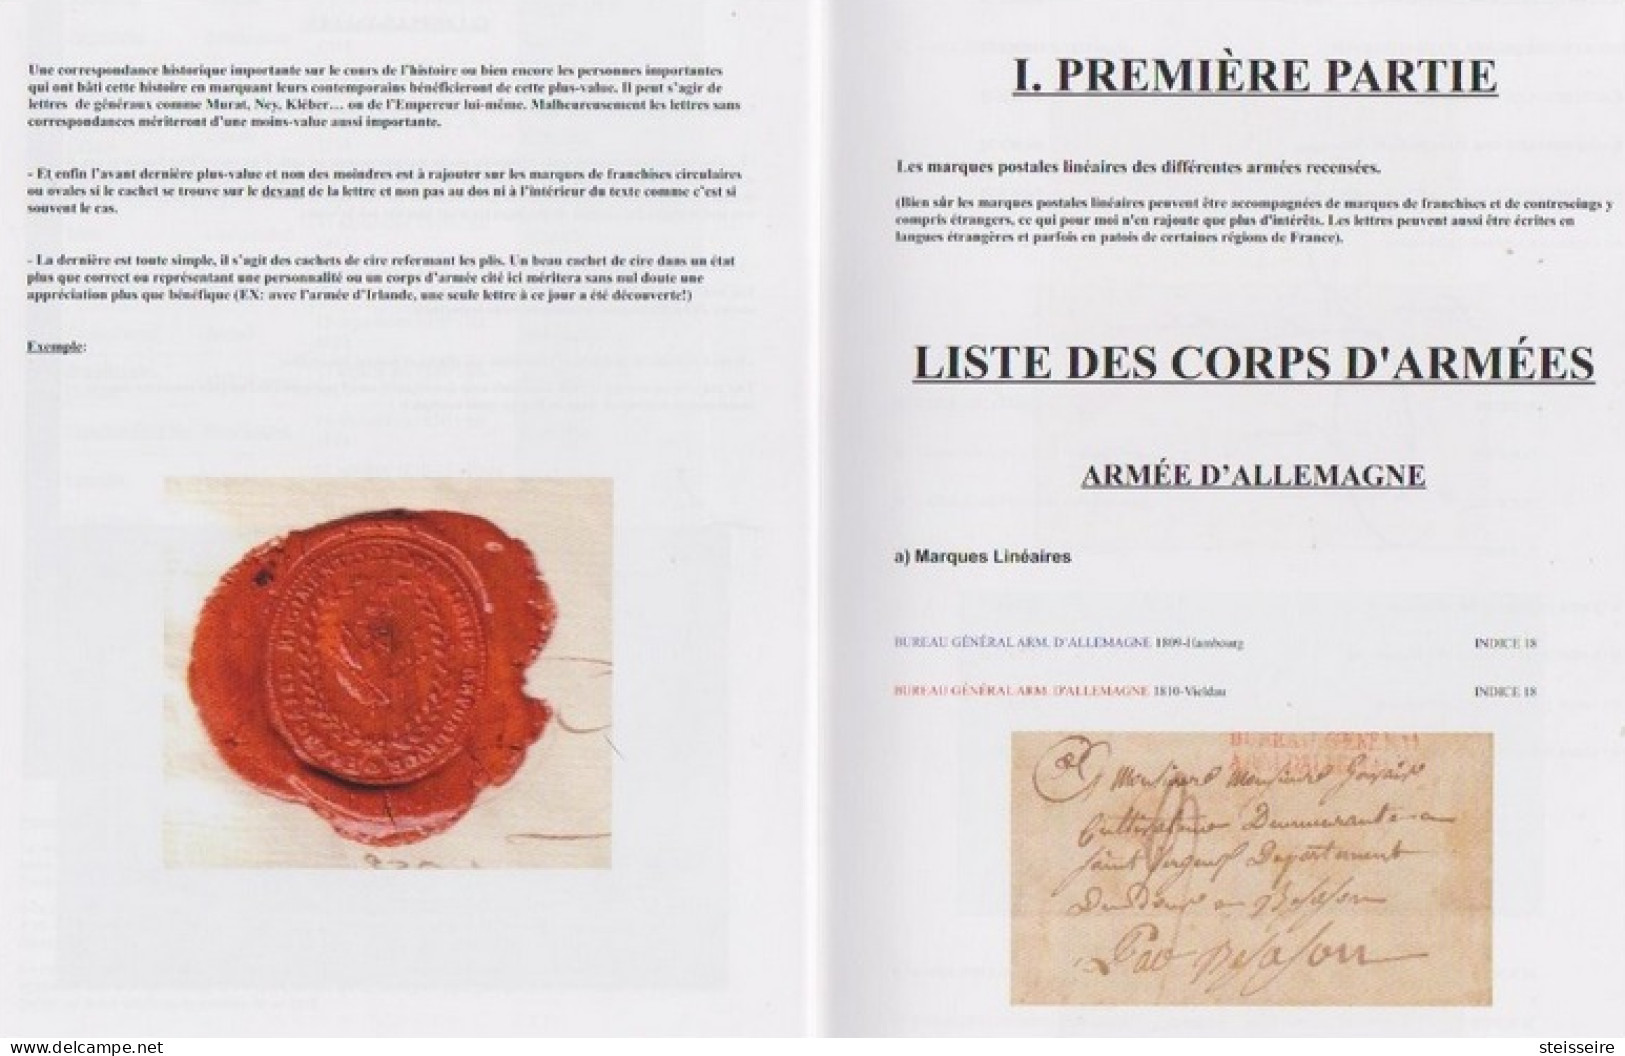 NOUVEAU CATALOGUE DE COTATIONS DES MARQUES POSTALES D'ARMÉES Période 1792/1848 - ...-1853 Voorfilatelie